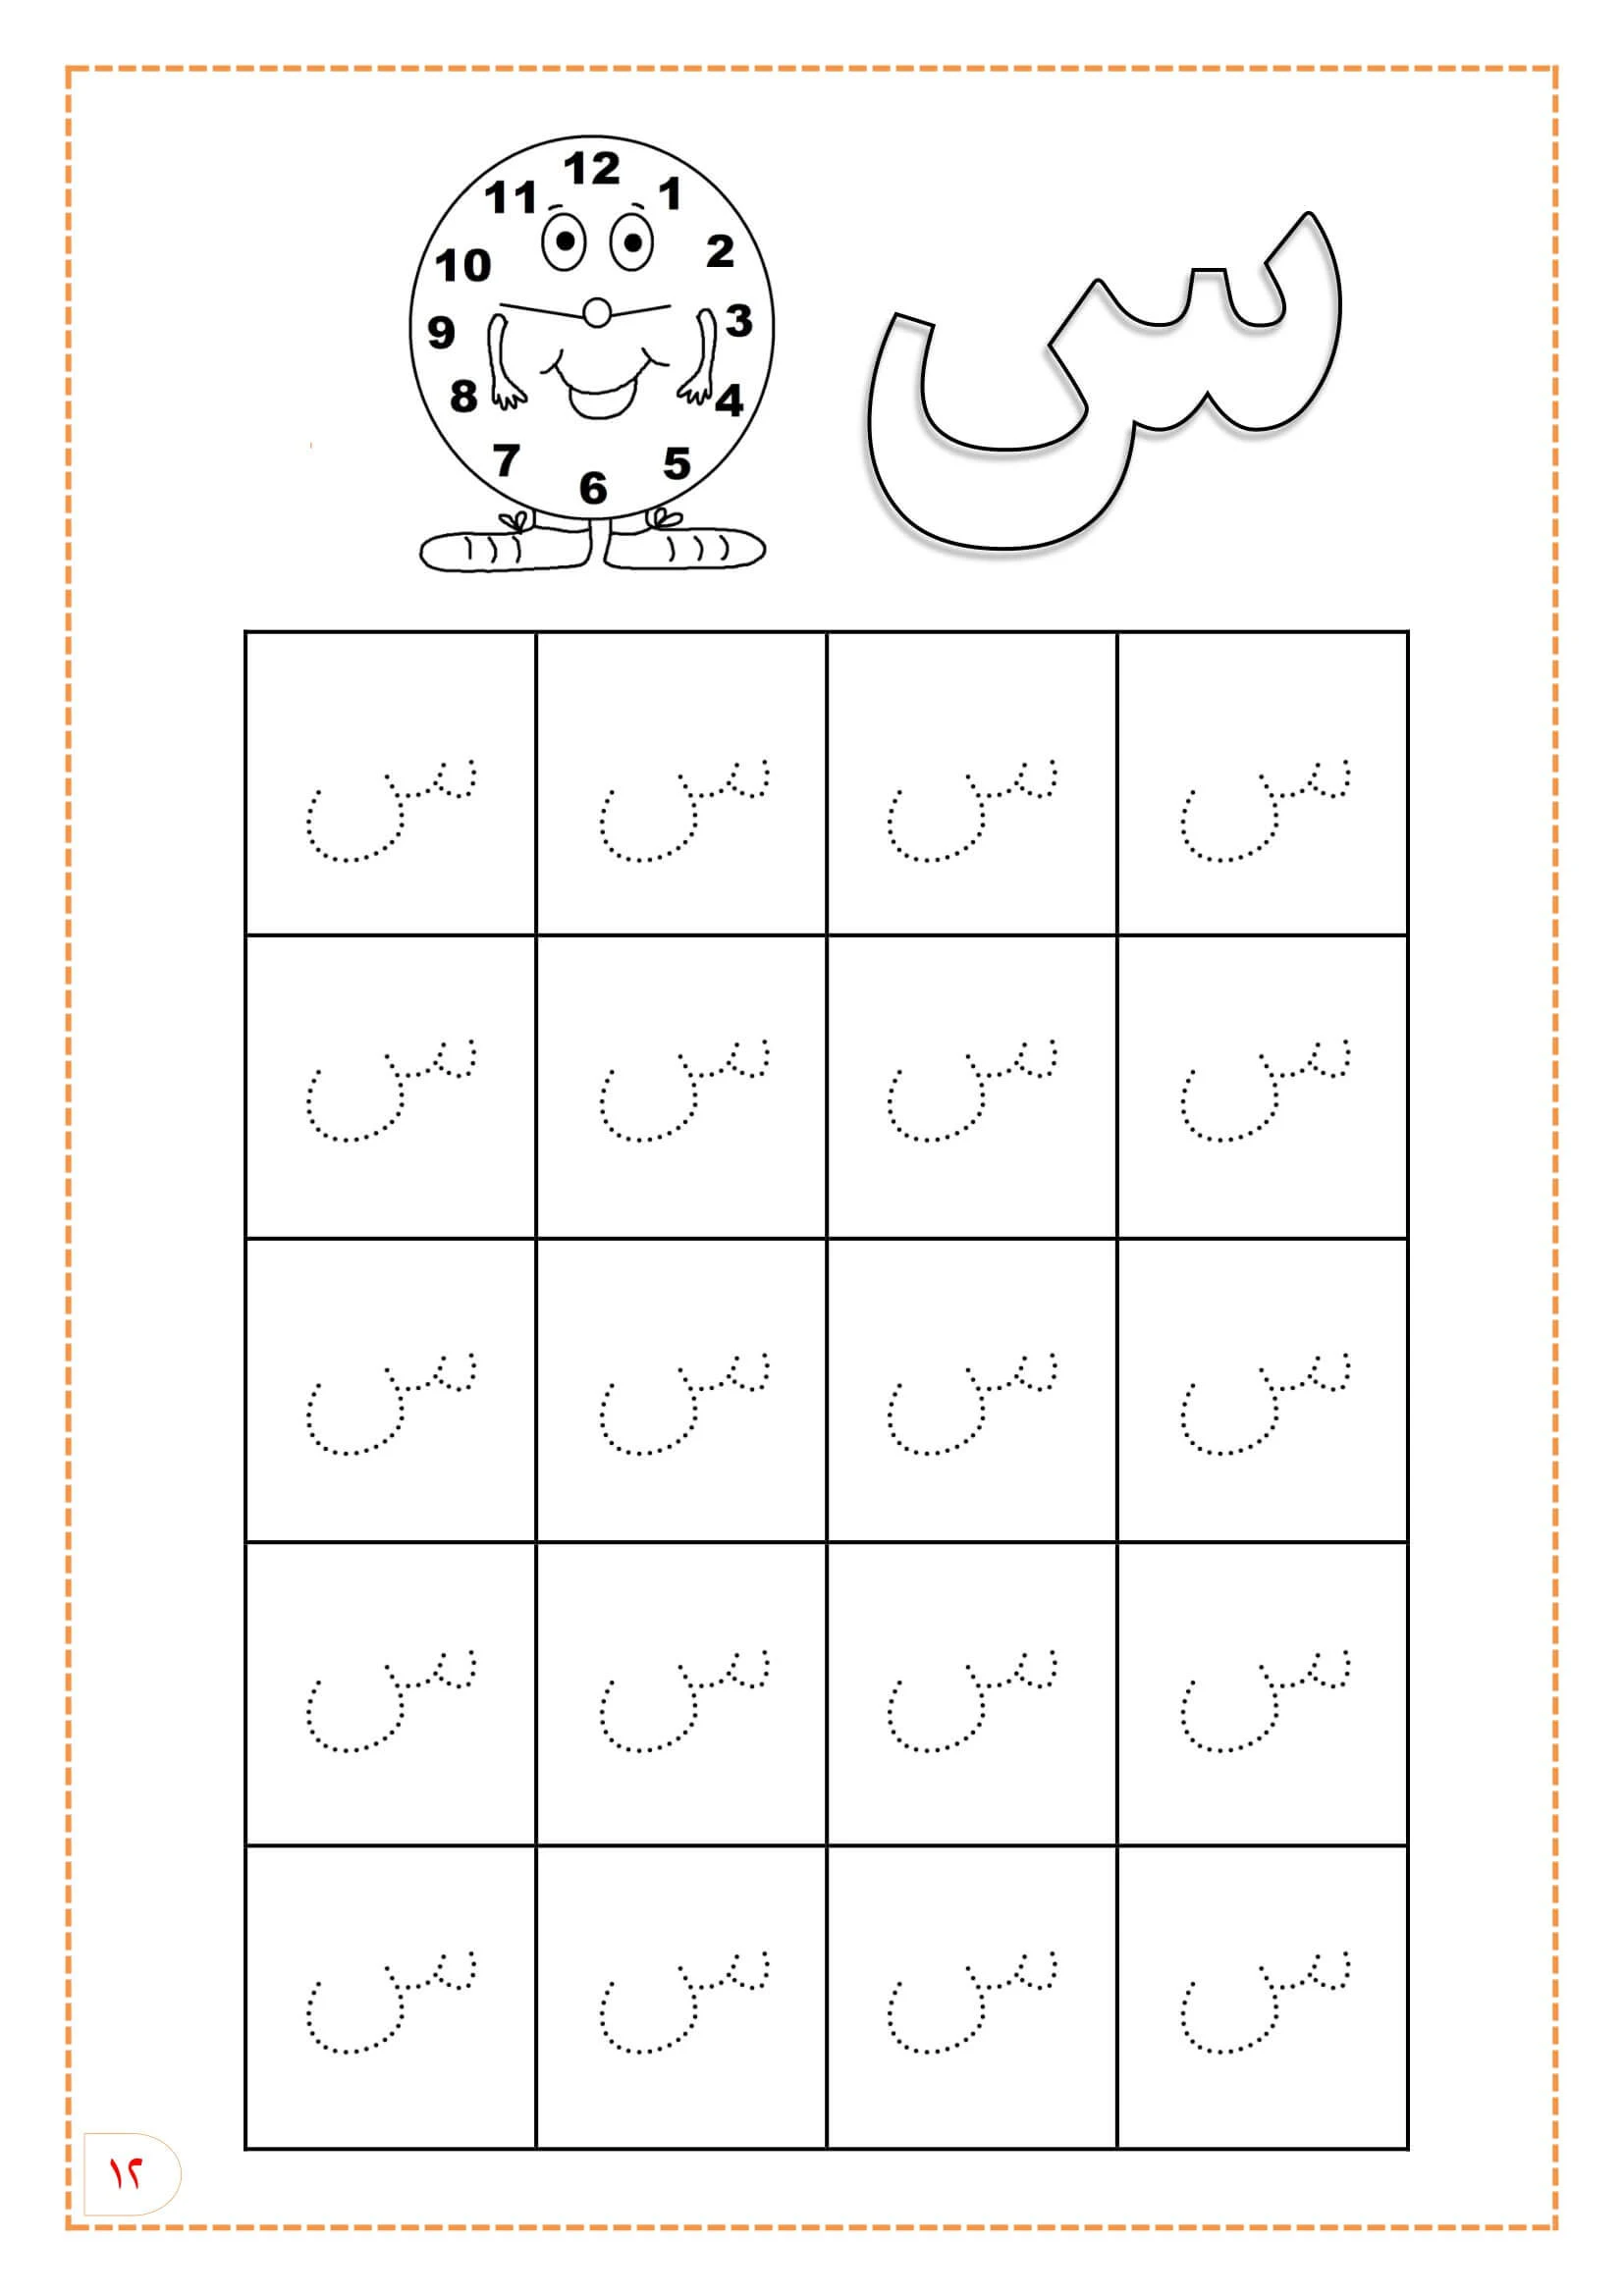 كتابة الحروف الهجائية المنقطة للأطفال